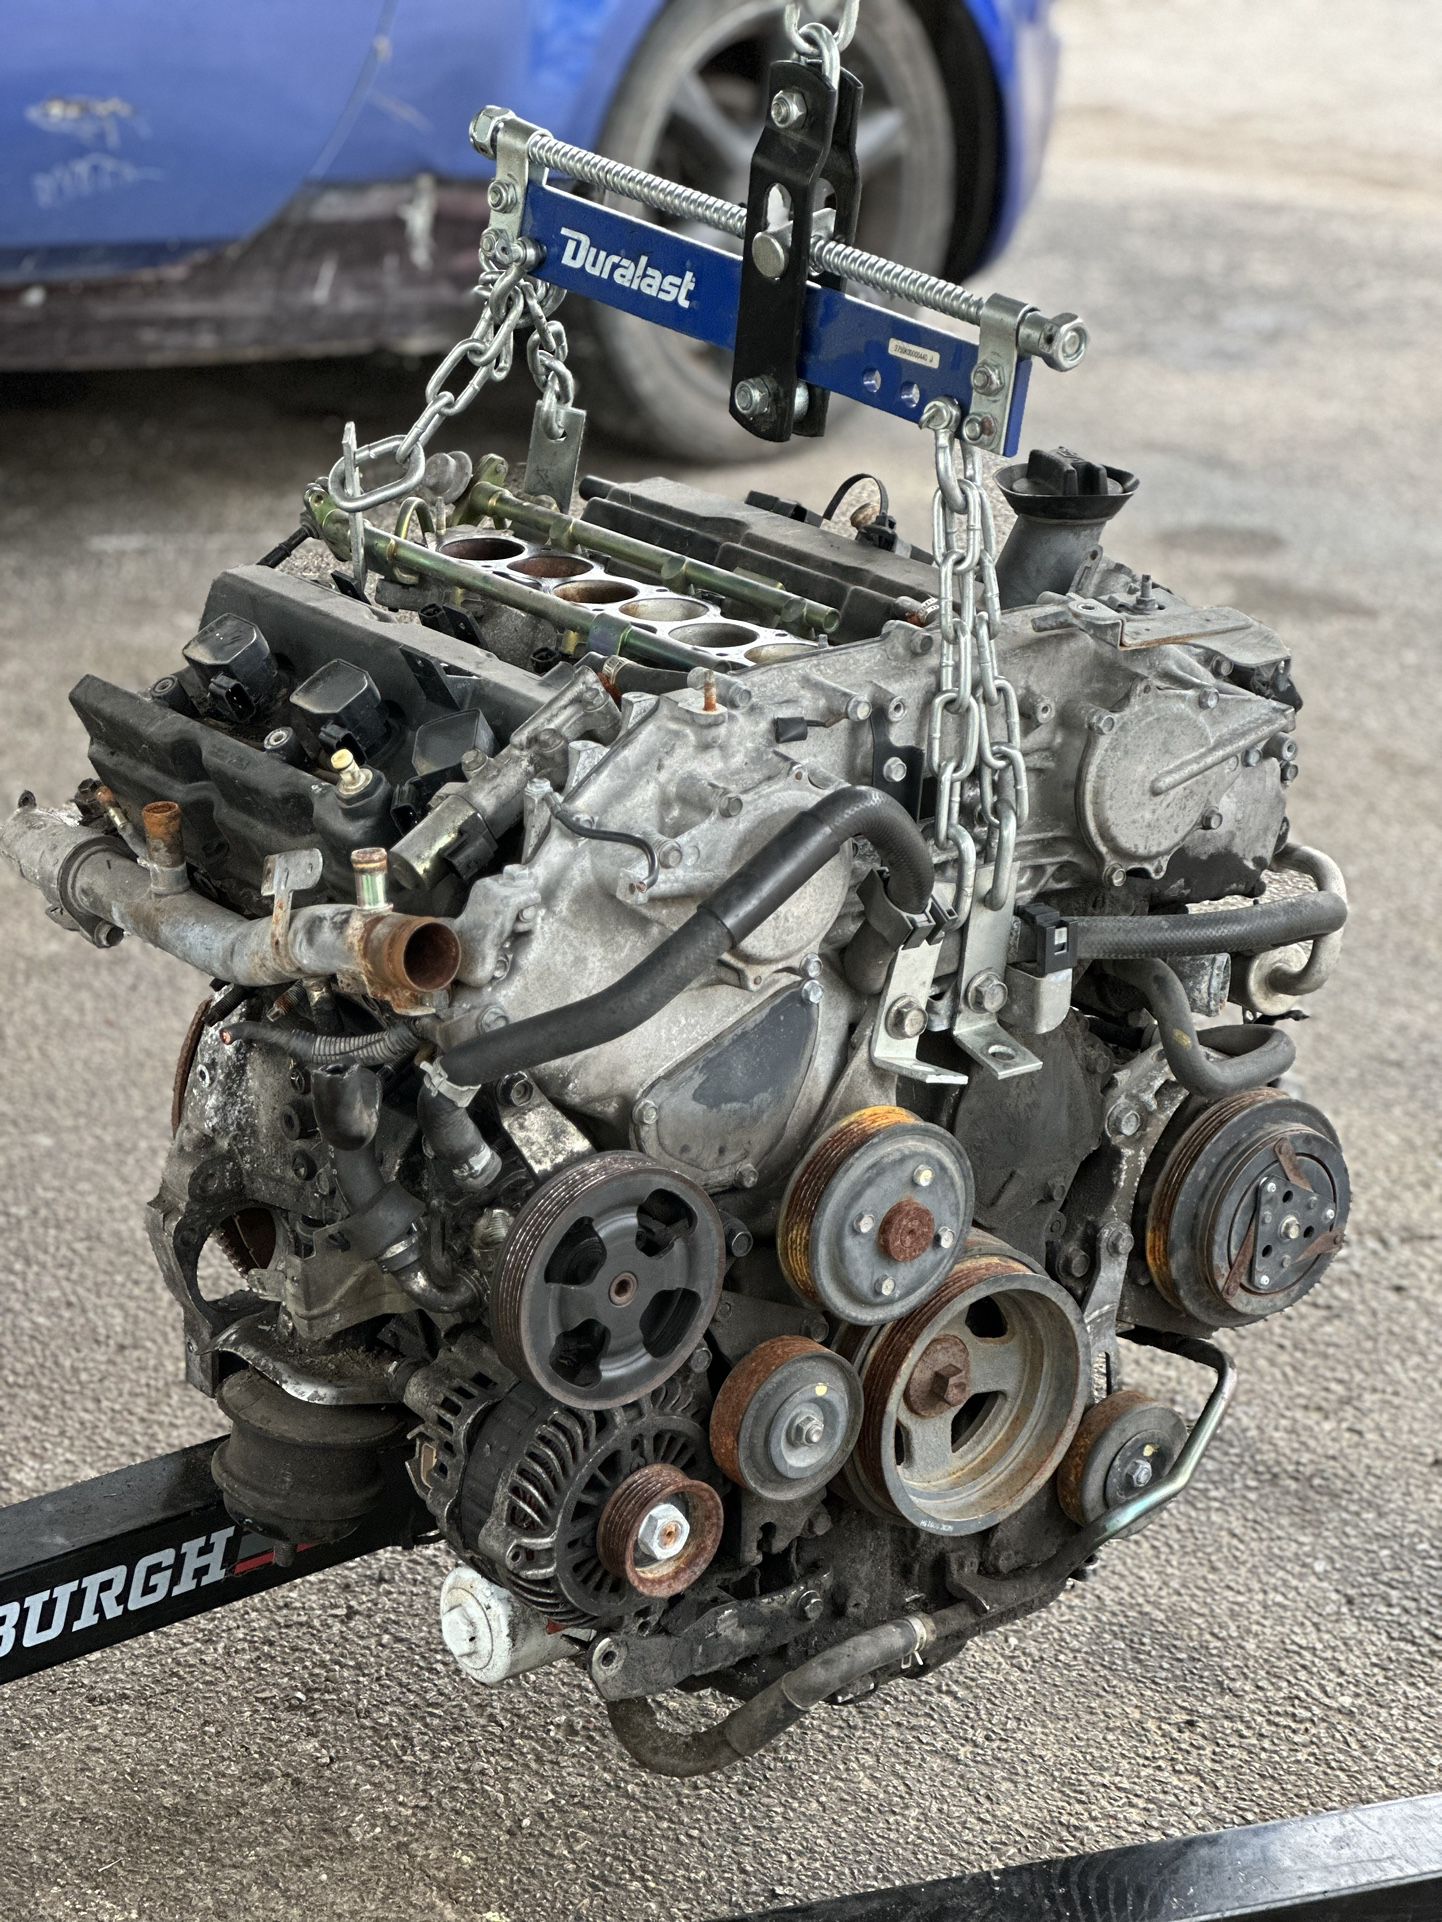 VQ35De (Non Rev-up) Engine